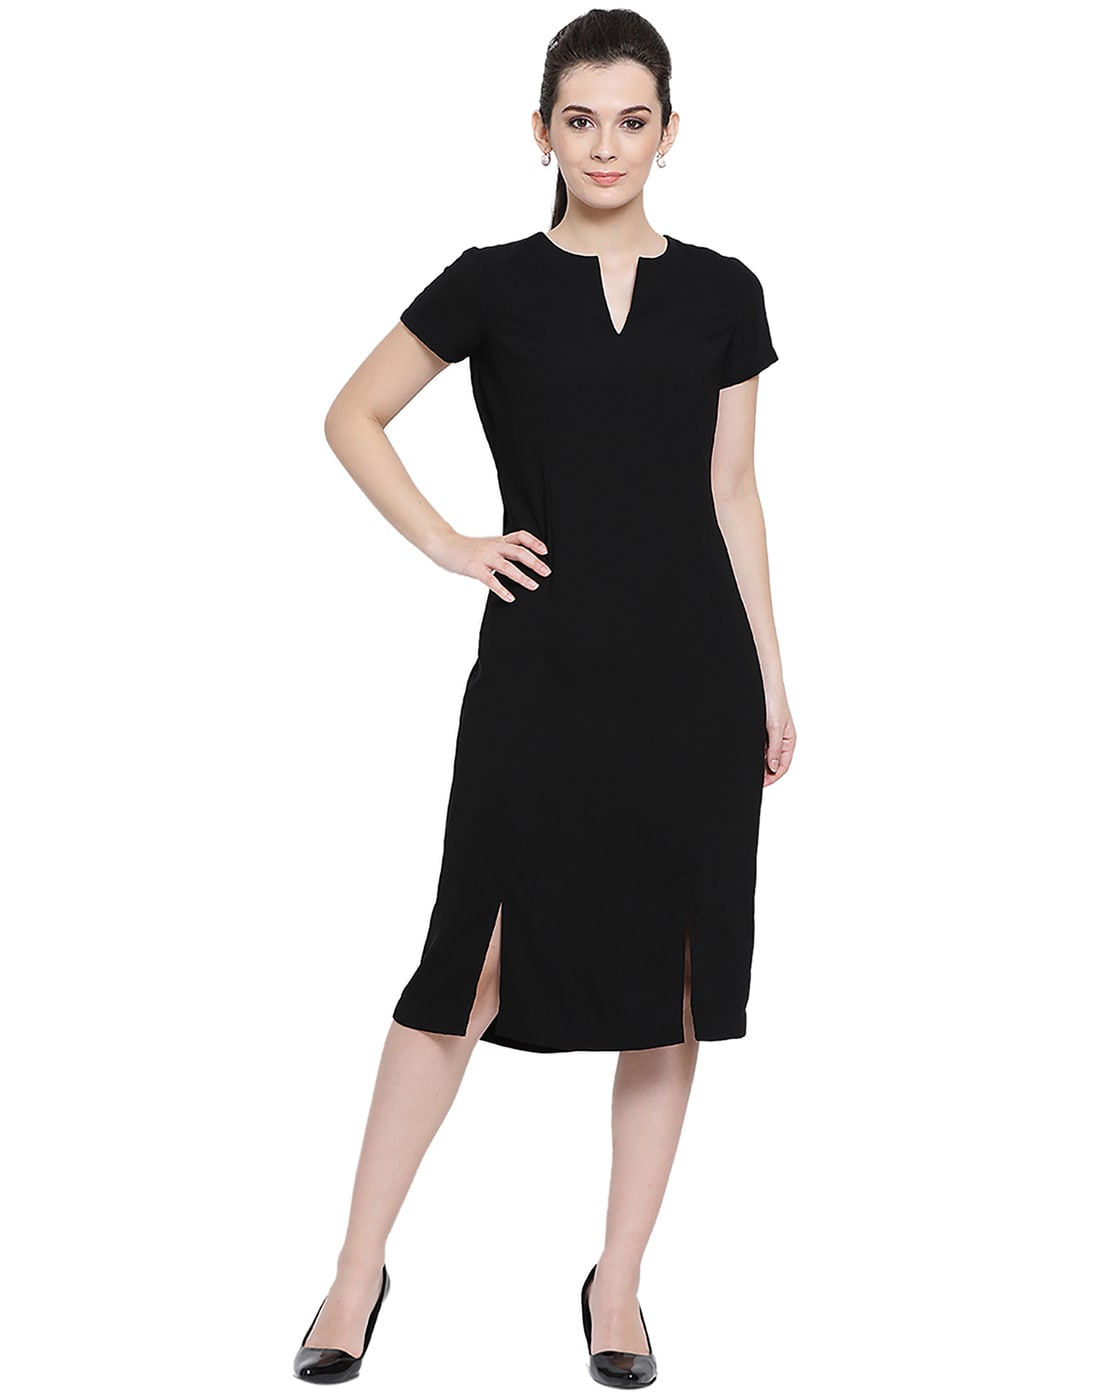 Golden Paisely Design Printed Black Dress Dresses for Women - Go Devil